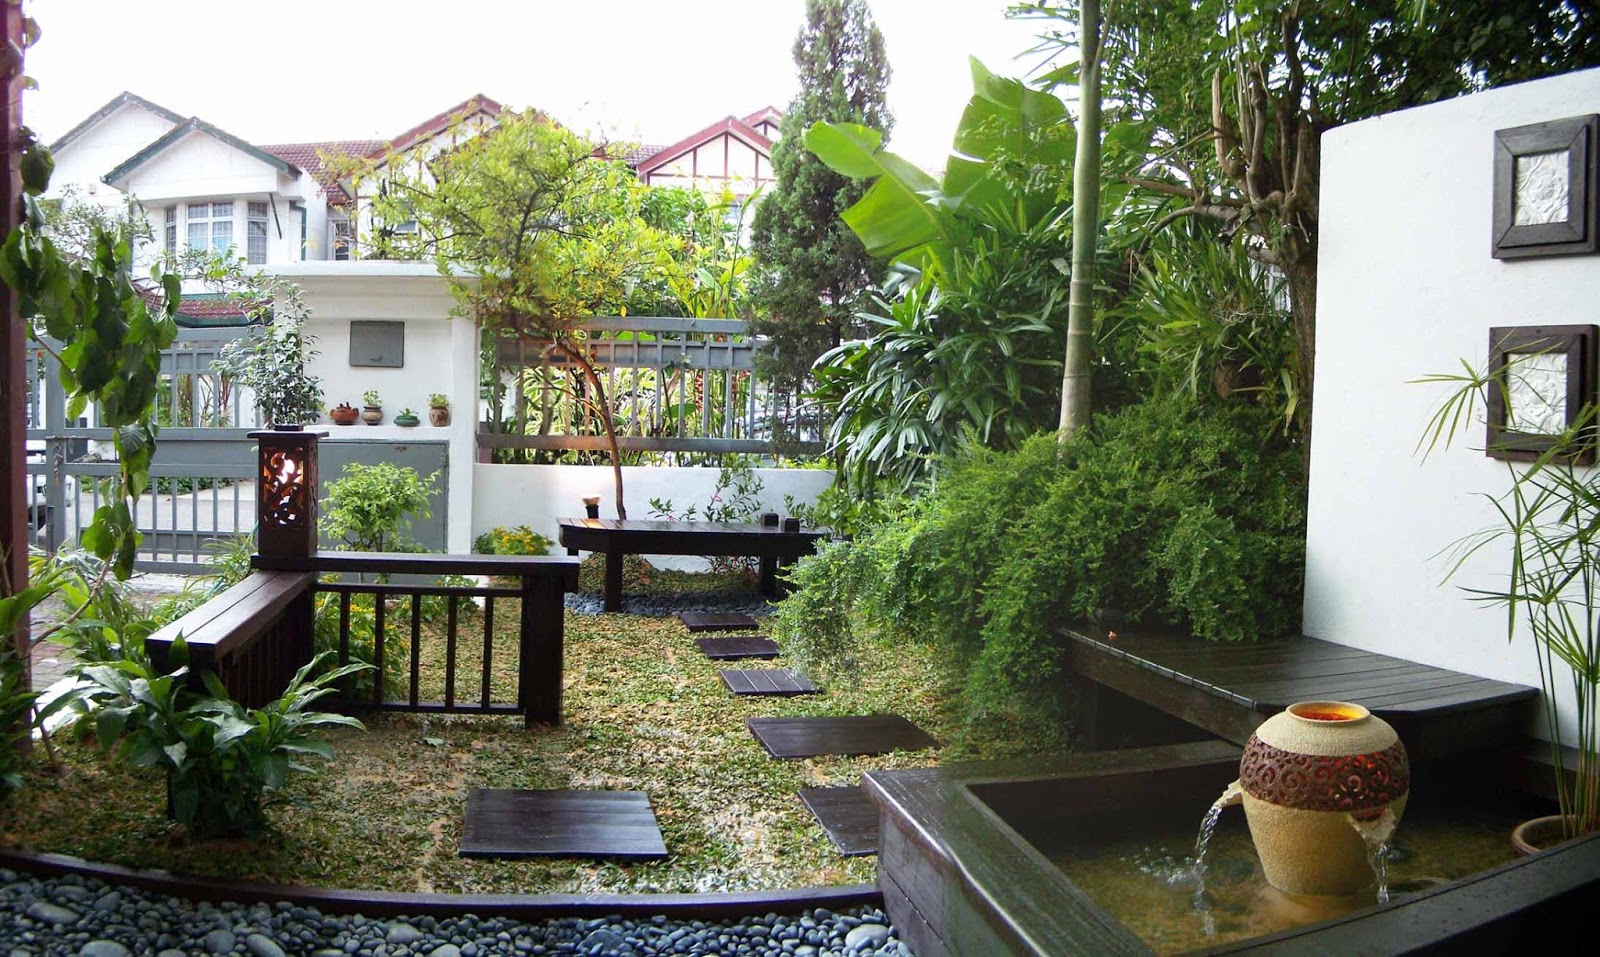 35 Desain Terbaru Taman Rumah Minimalis 2017 - Jasa ...